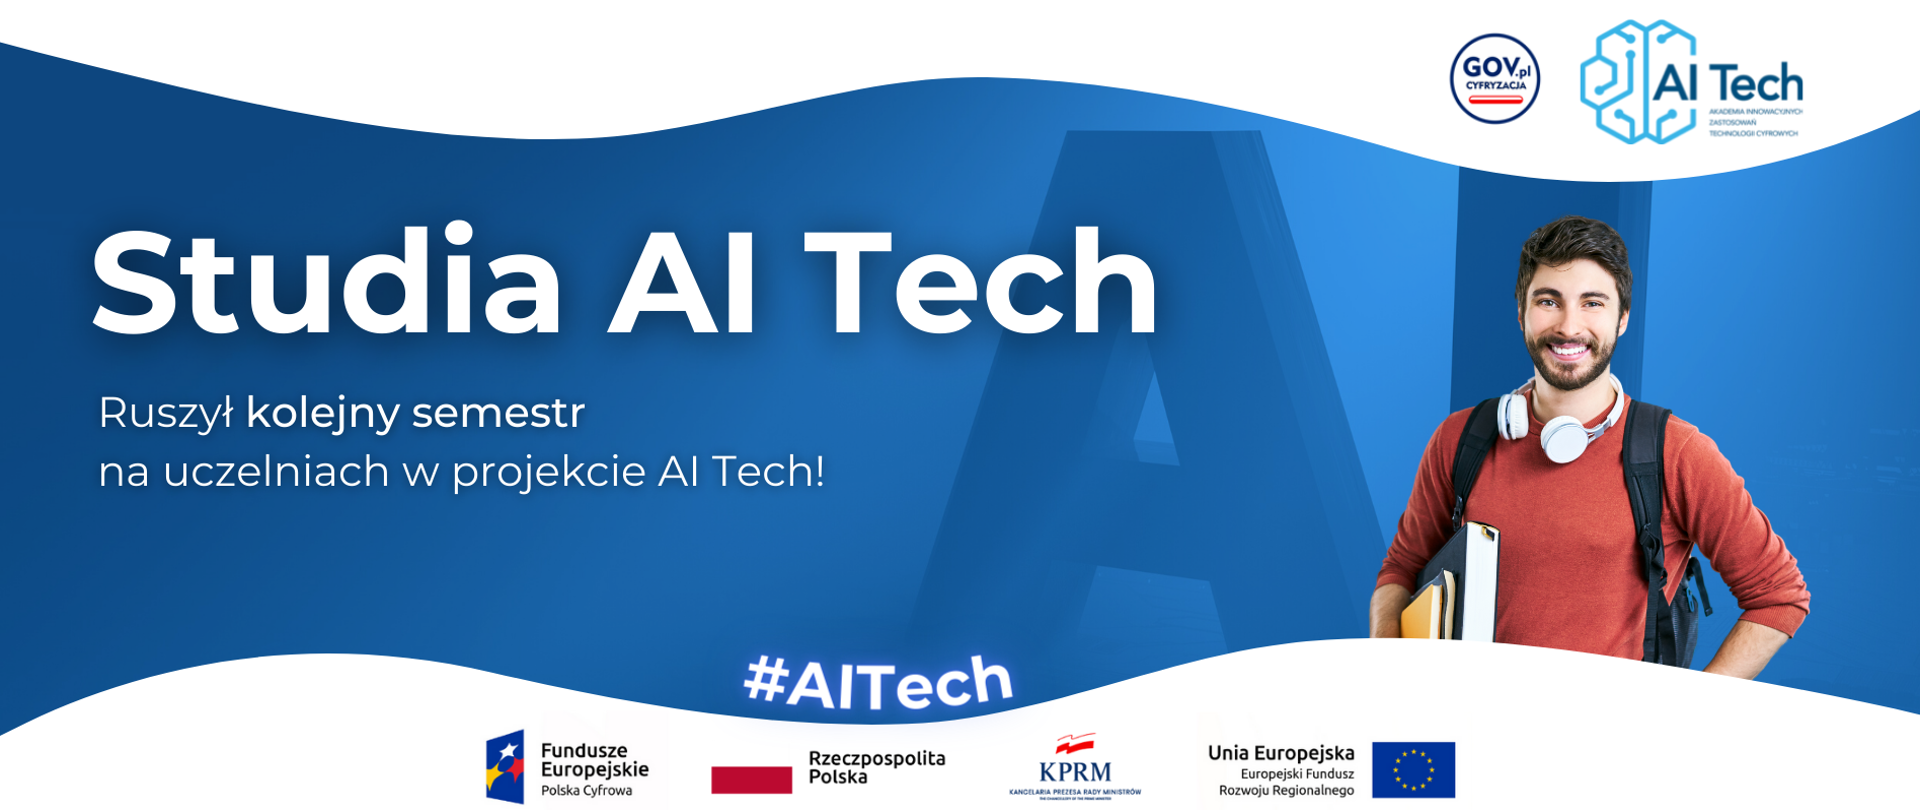 Studia AI Tech
Ruszył kolejny semestr na uczelniach w projekcie AI Tech!